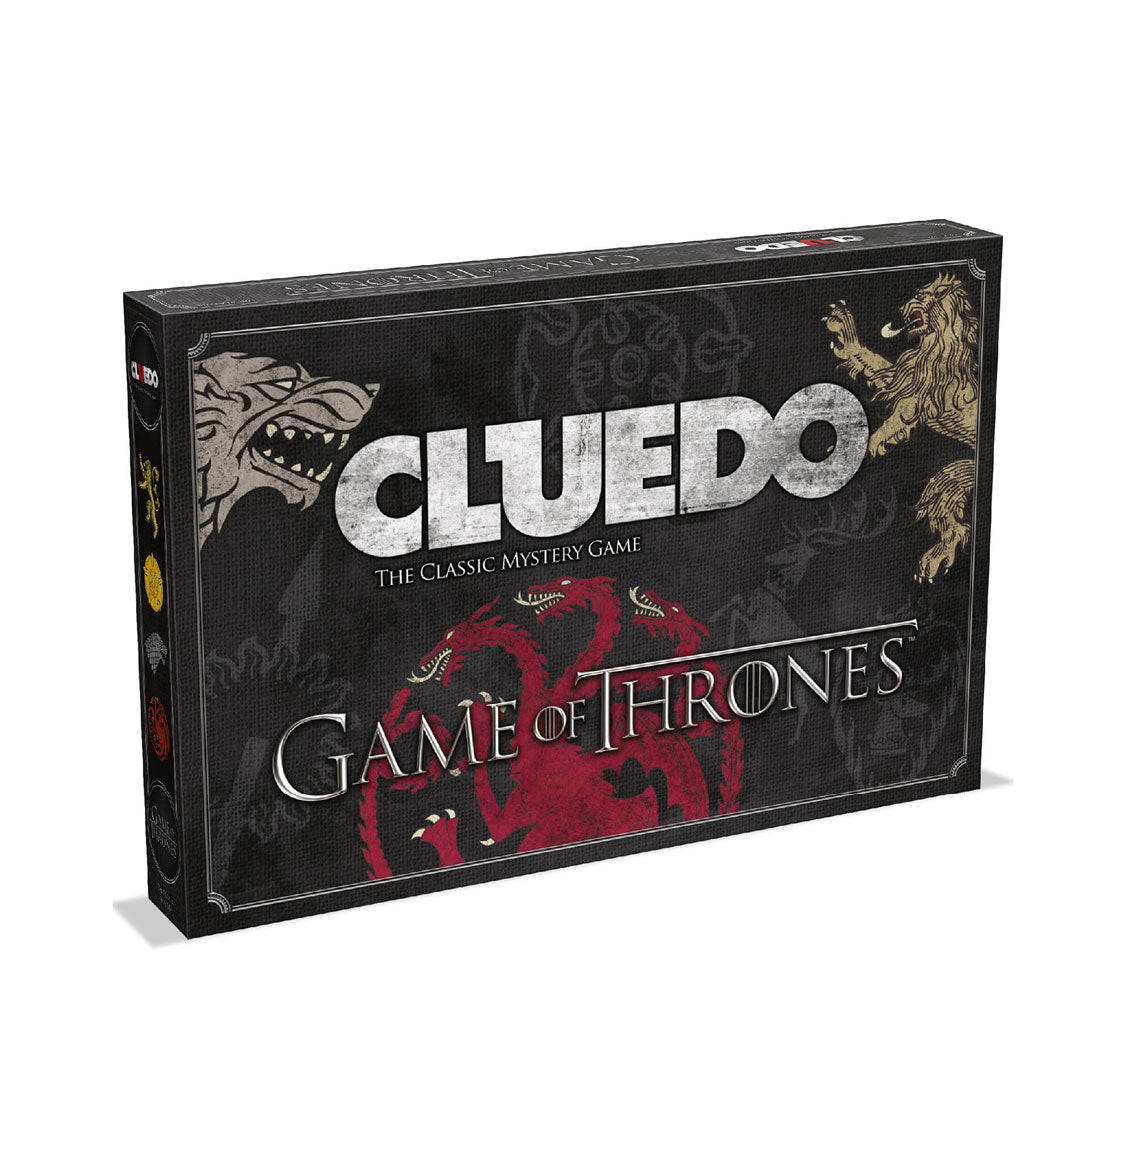 სამაგიდო თამაში კლუედო სამეფო კარის თამაშები (Cluedo Game of Thrones) სამაგიდო თამაში